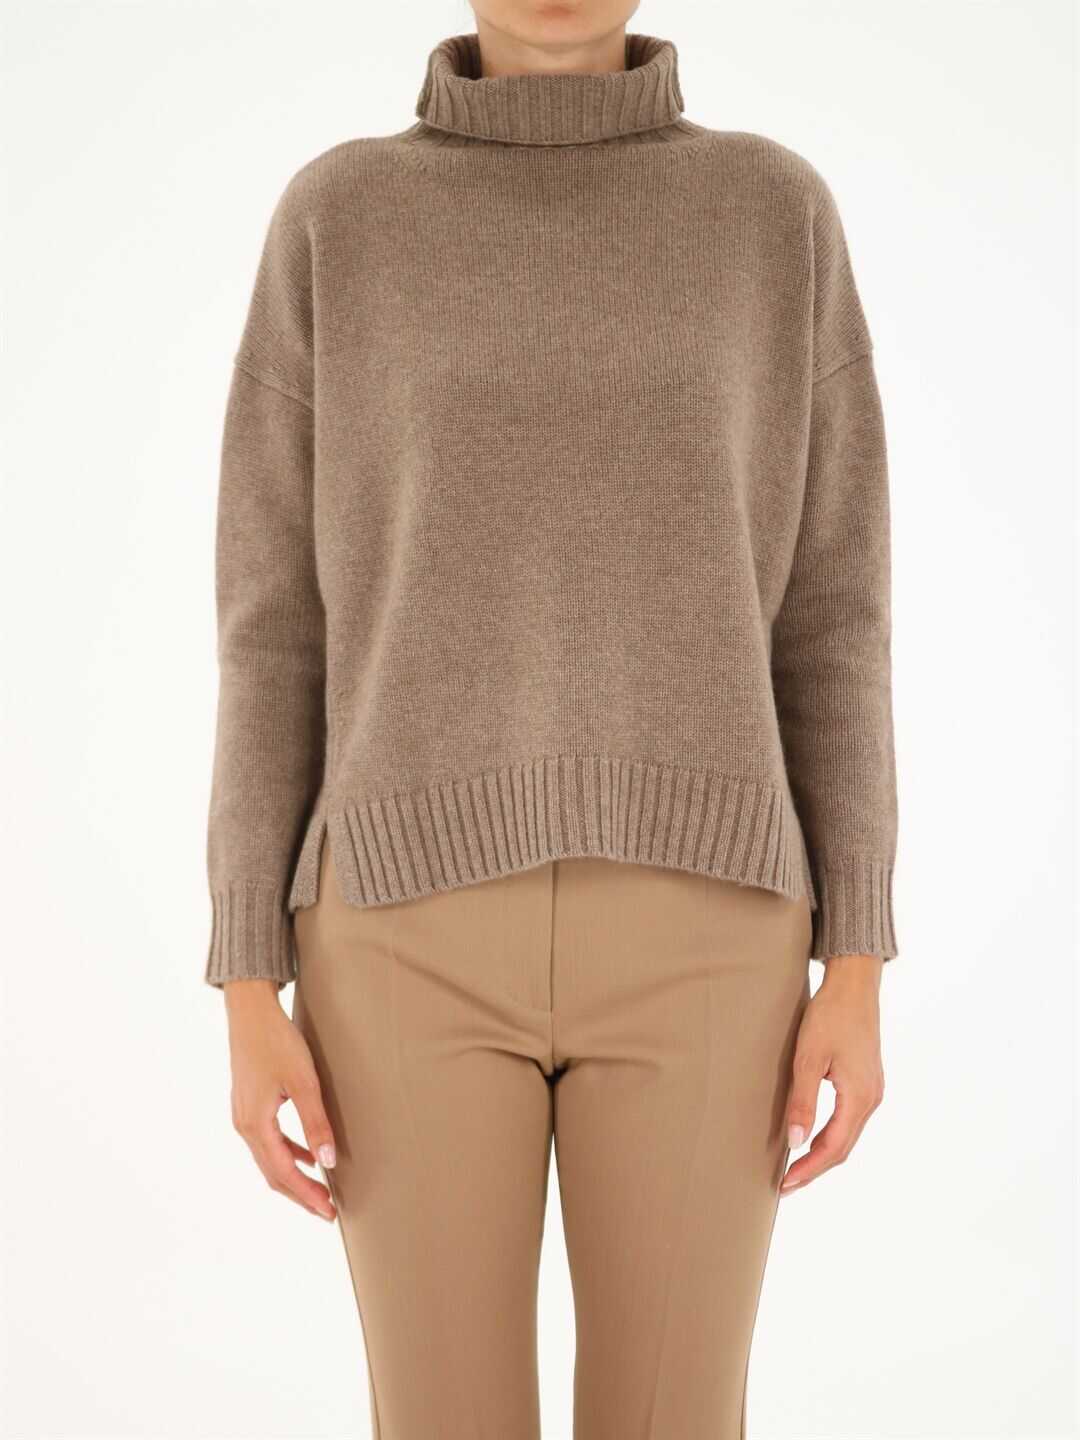 Max Mara Trau Sweater In Wool And Cashmere Black 13661113600 12110 N/A